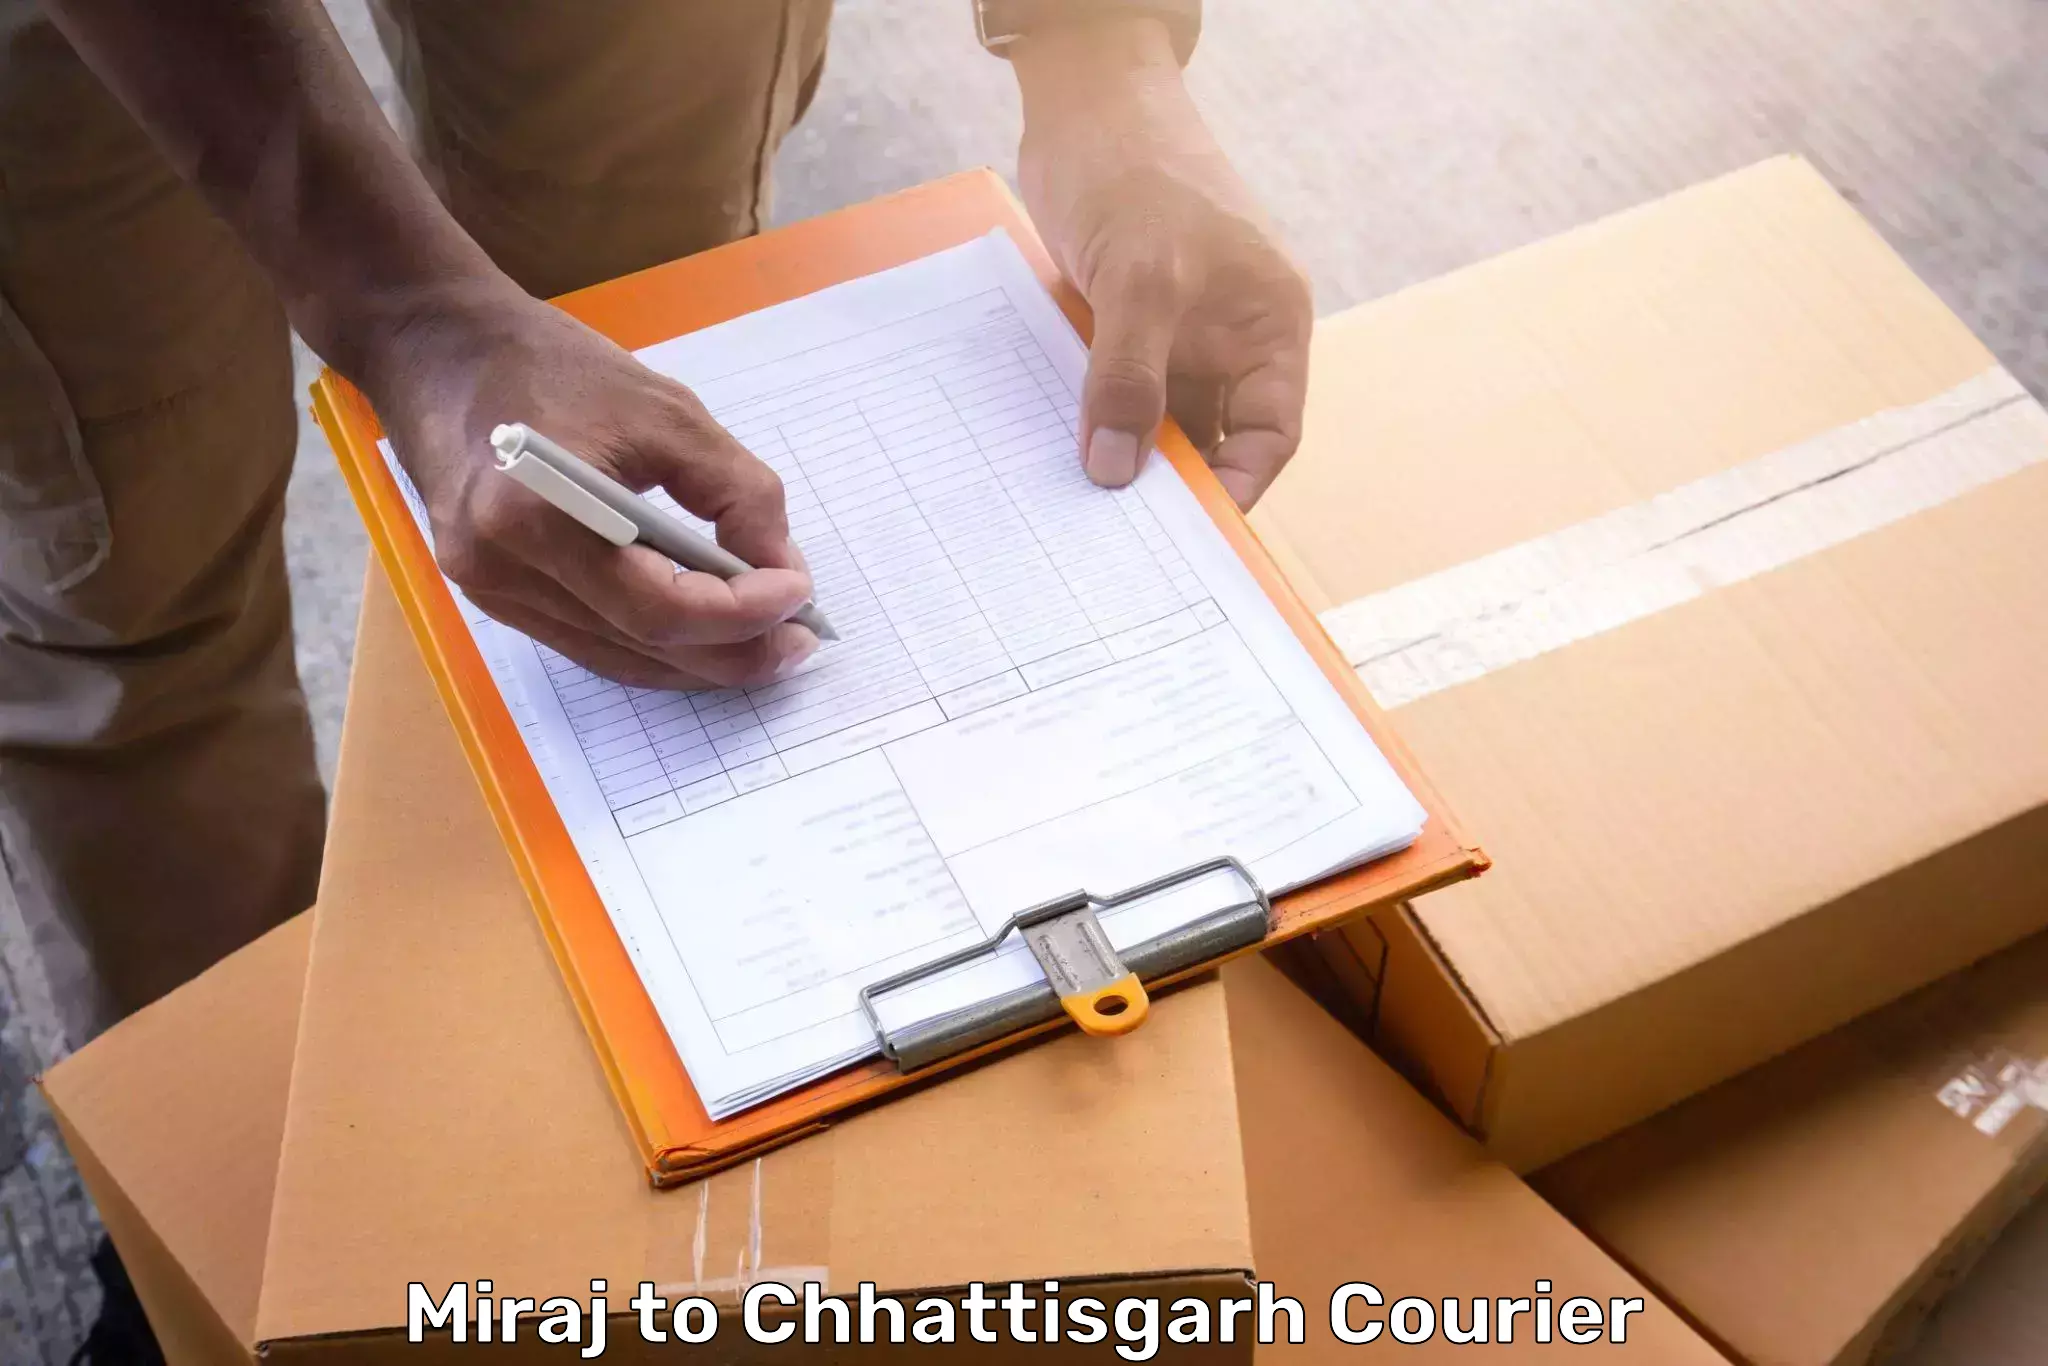 Luggage delivery estimate Miraj to Patna Chhattisgarh